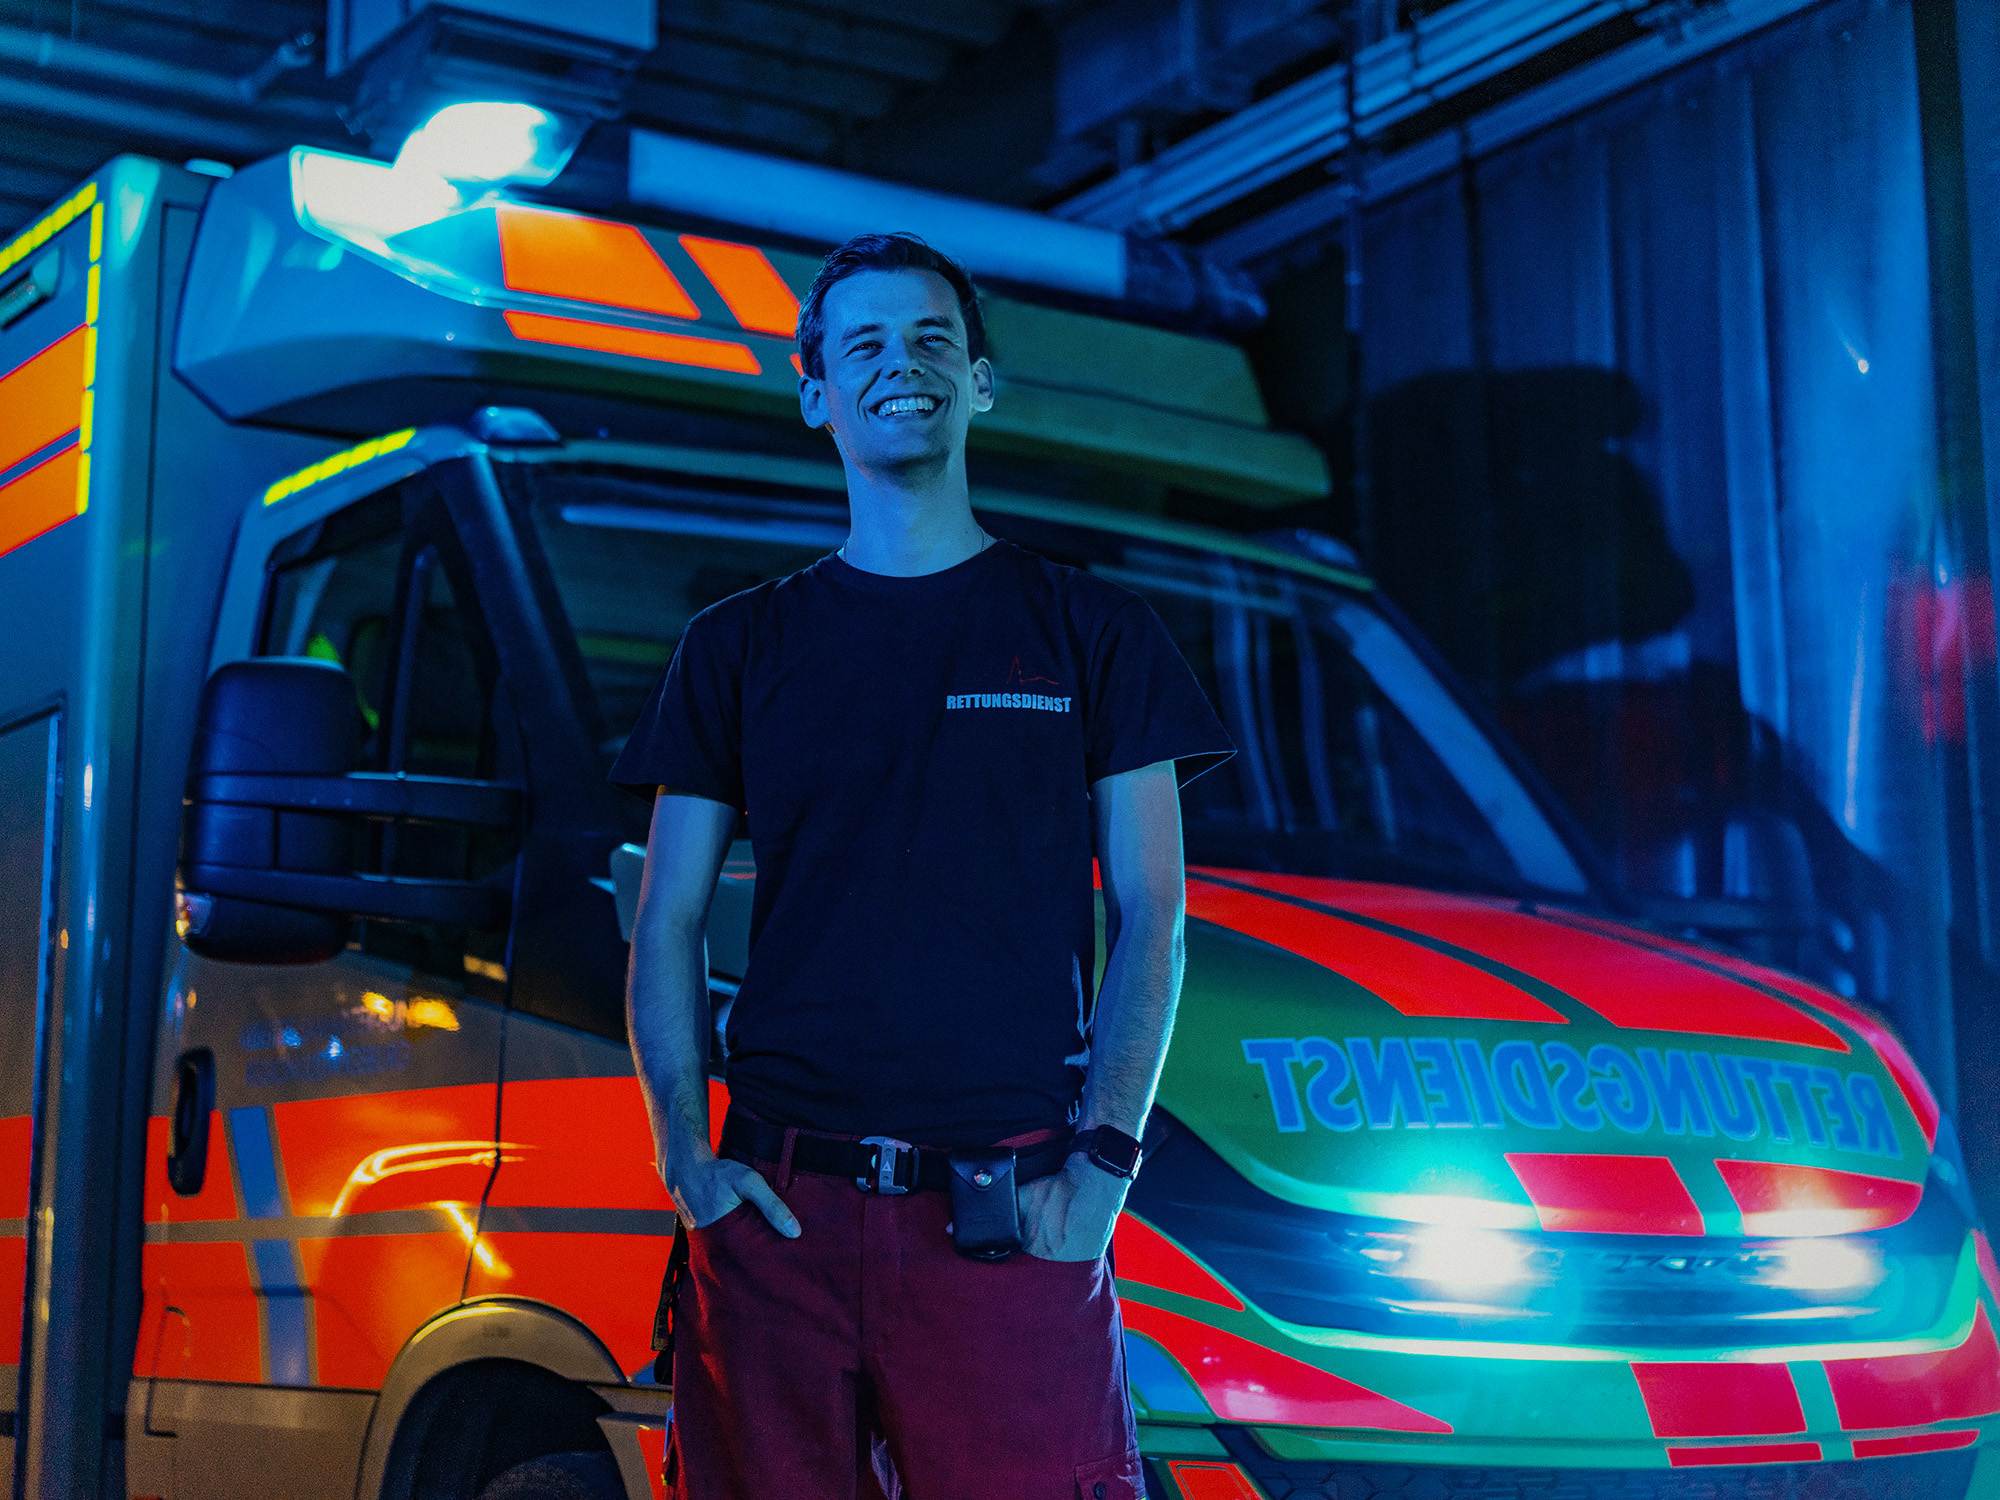 Bild des Leihkraftes von Hire a Paramedic. Er steht vor dem Krankenwagen in seiner Uniform und lächelt.